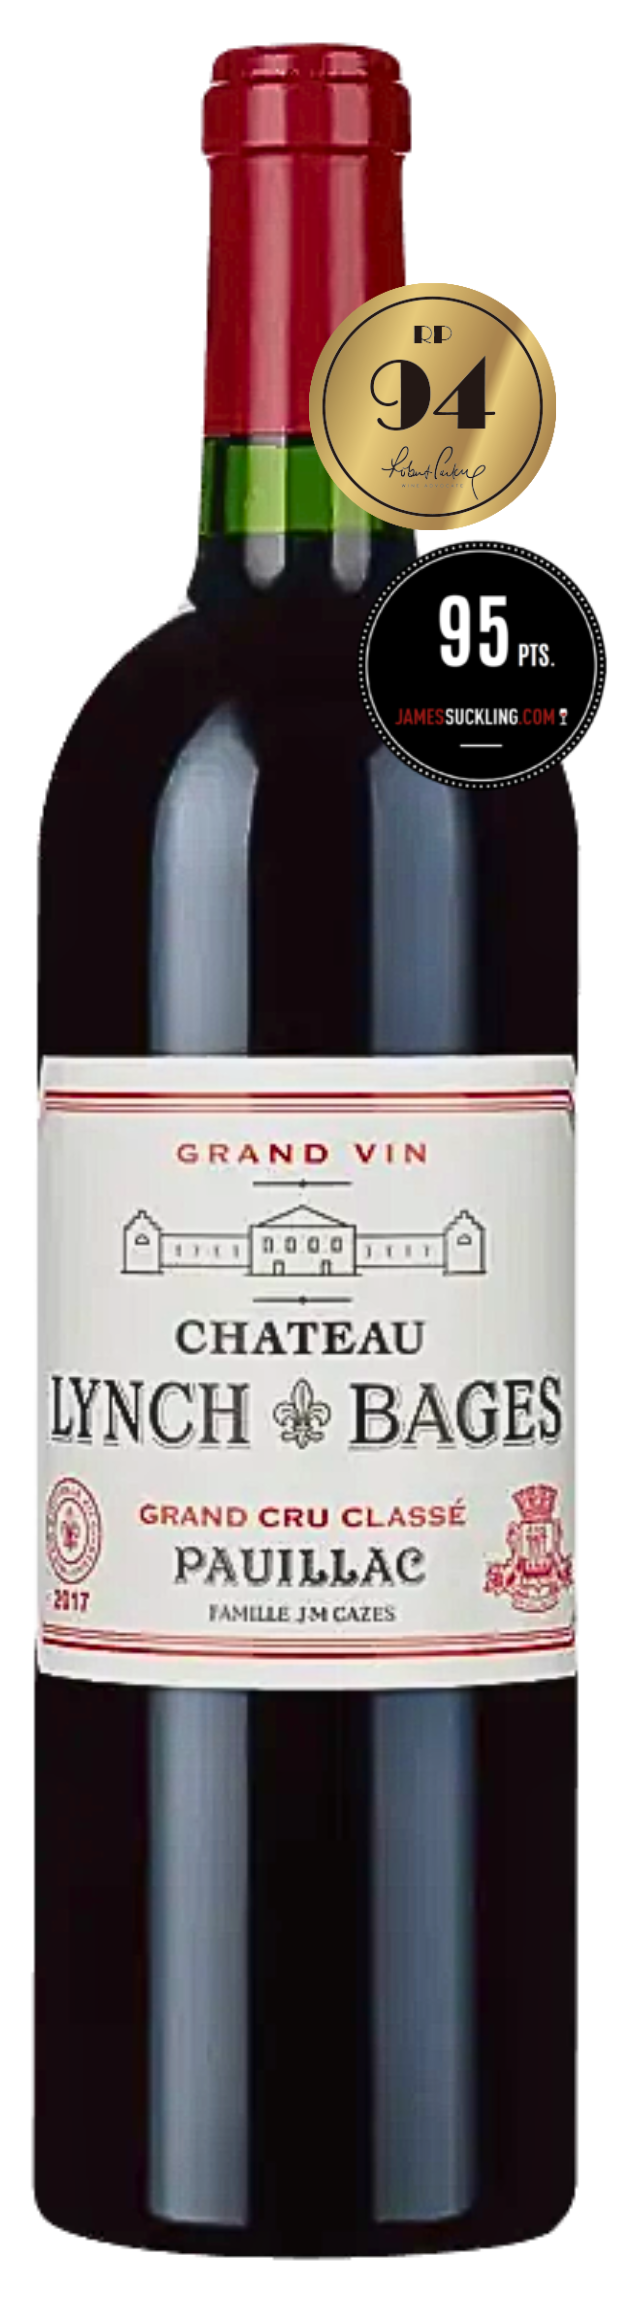 Château Lynch-Bages 2017 (RP:94, JS:95)